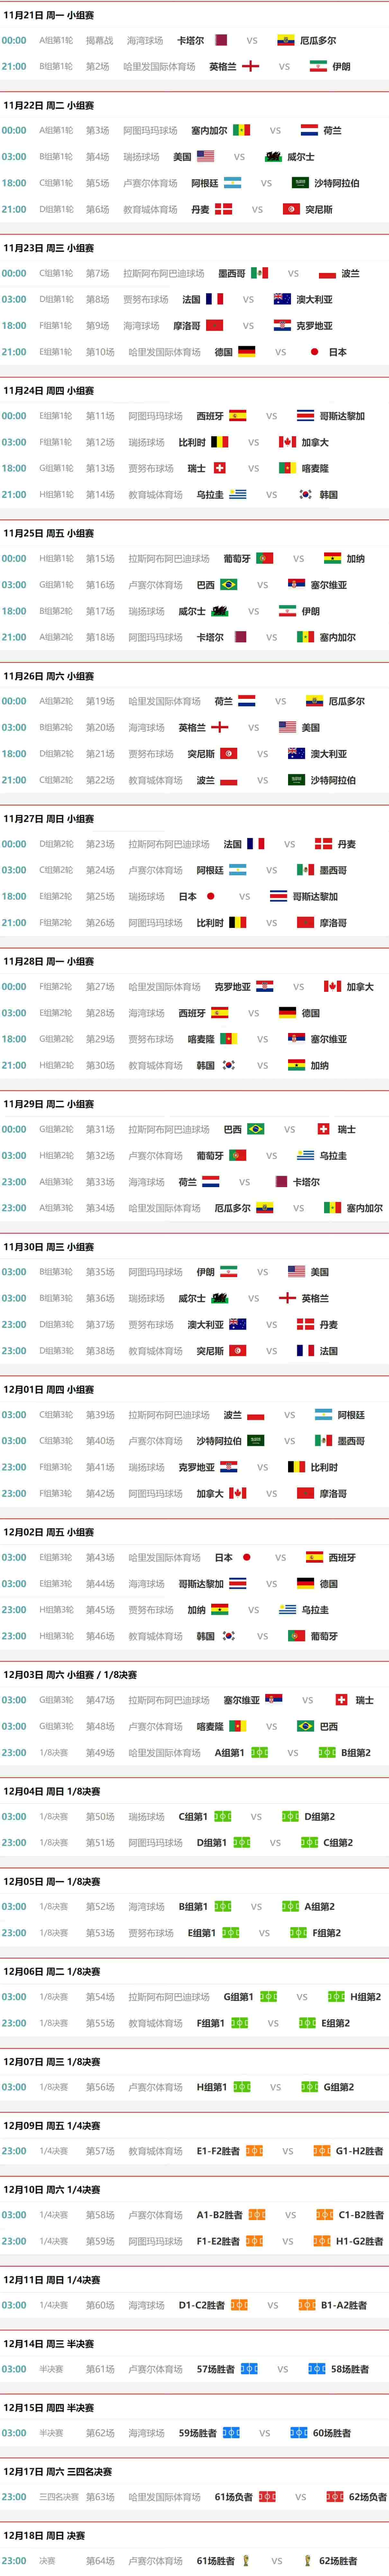 2022年世界杯足球赛队伍赛程详细介绍